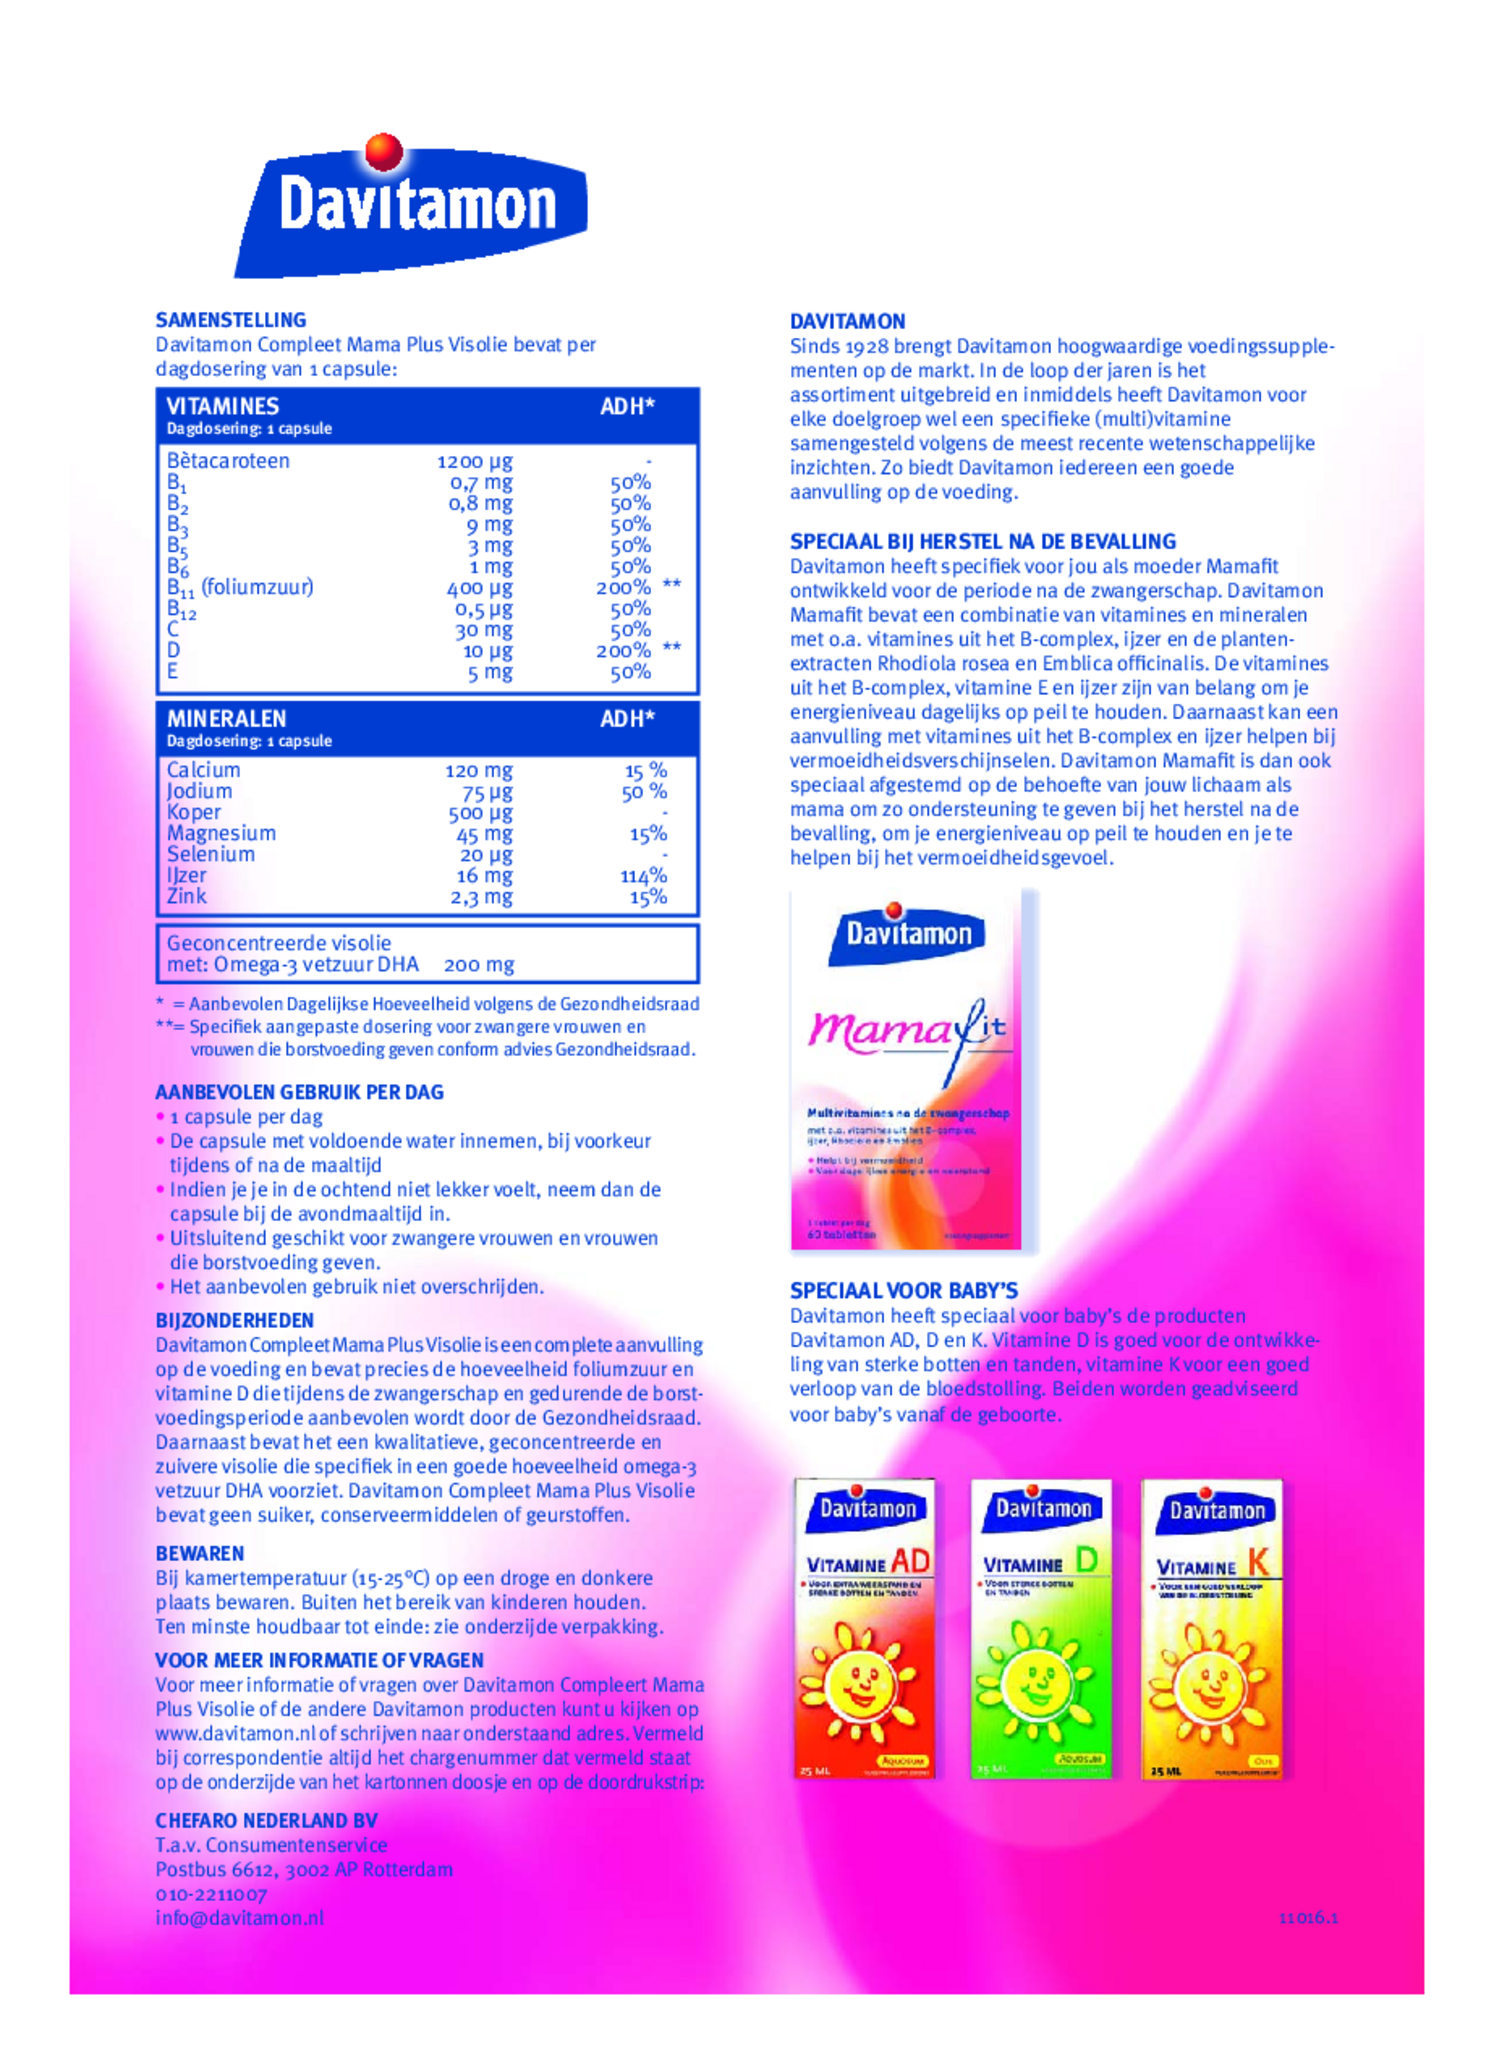 Compleet Zwanger + Omega-3 Visolie Capsules afbeelding van document #2, gebruiksaanwijzing